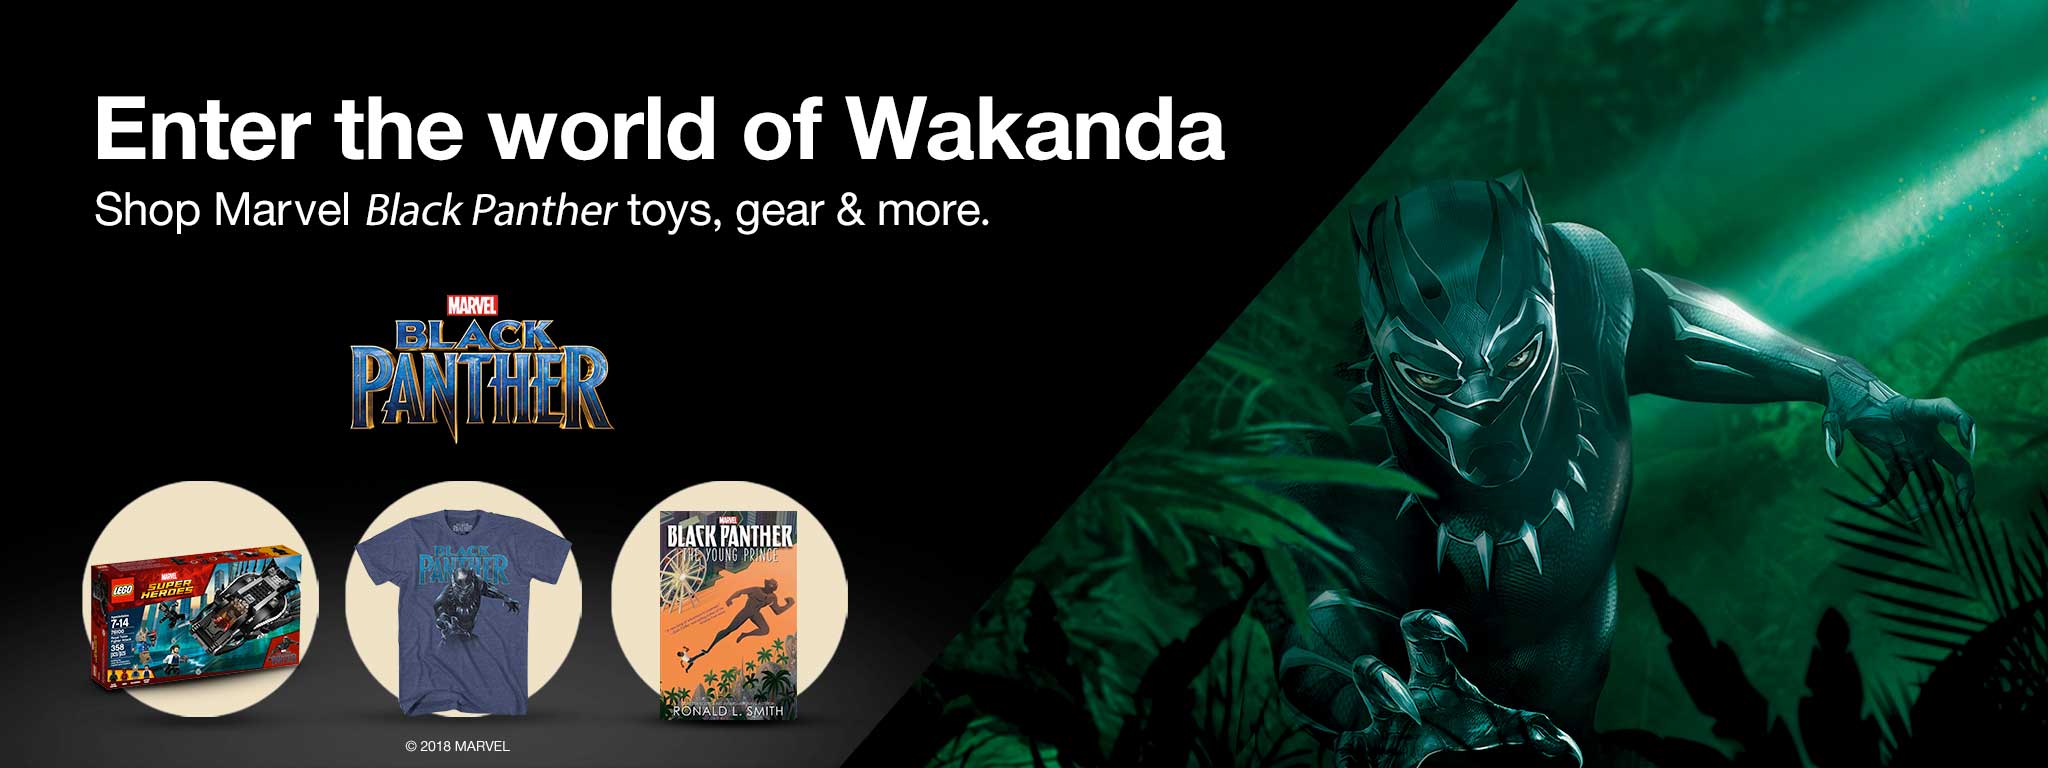 MARVEL BLACK PANTHER. Enter the world of Wakanda. Shop Marvel Black Panther toys, gear & more. Copyright 2018 MARVEL.